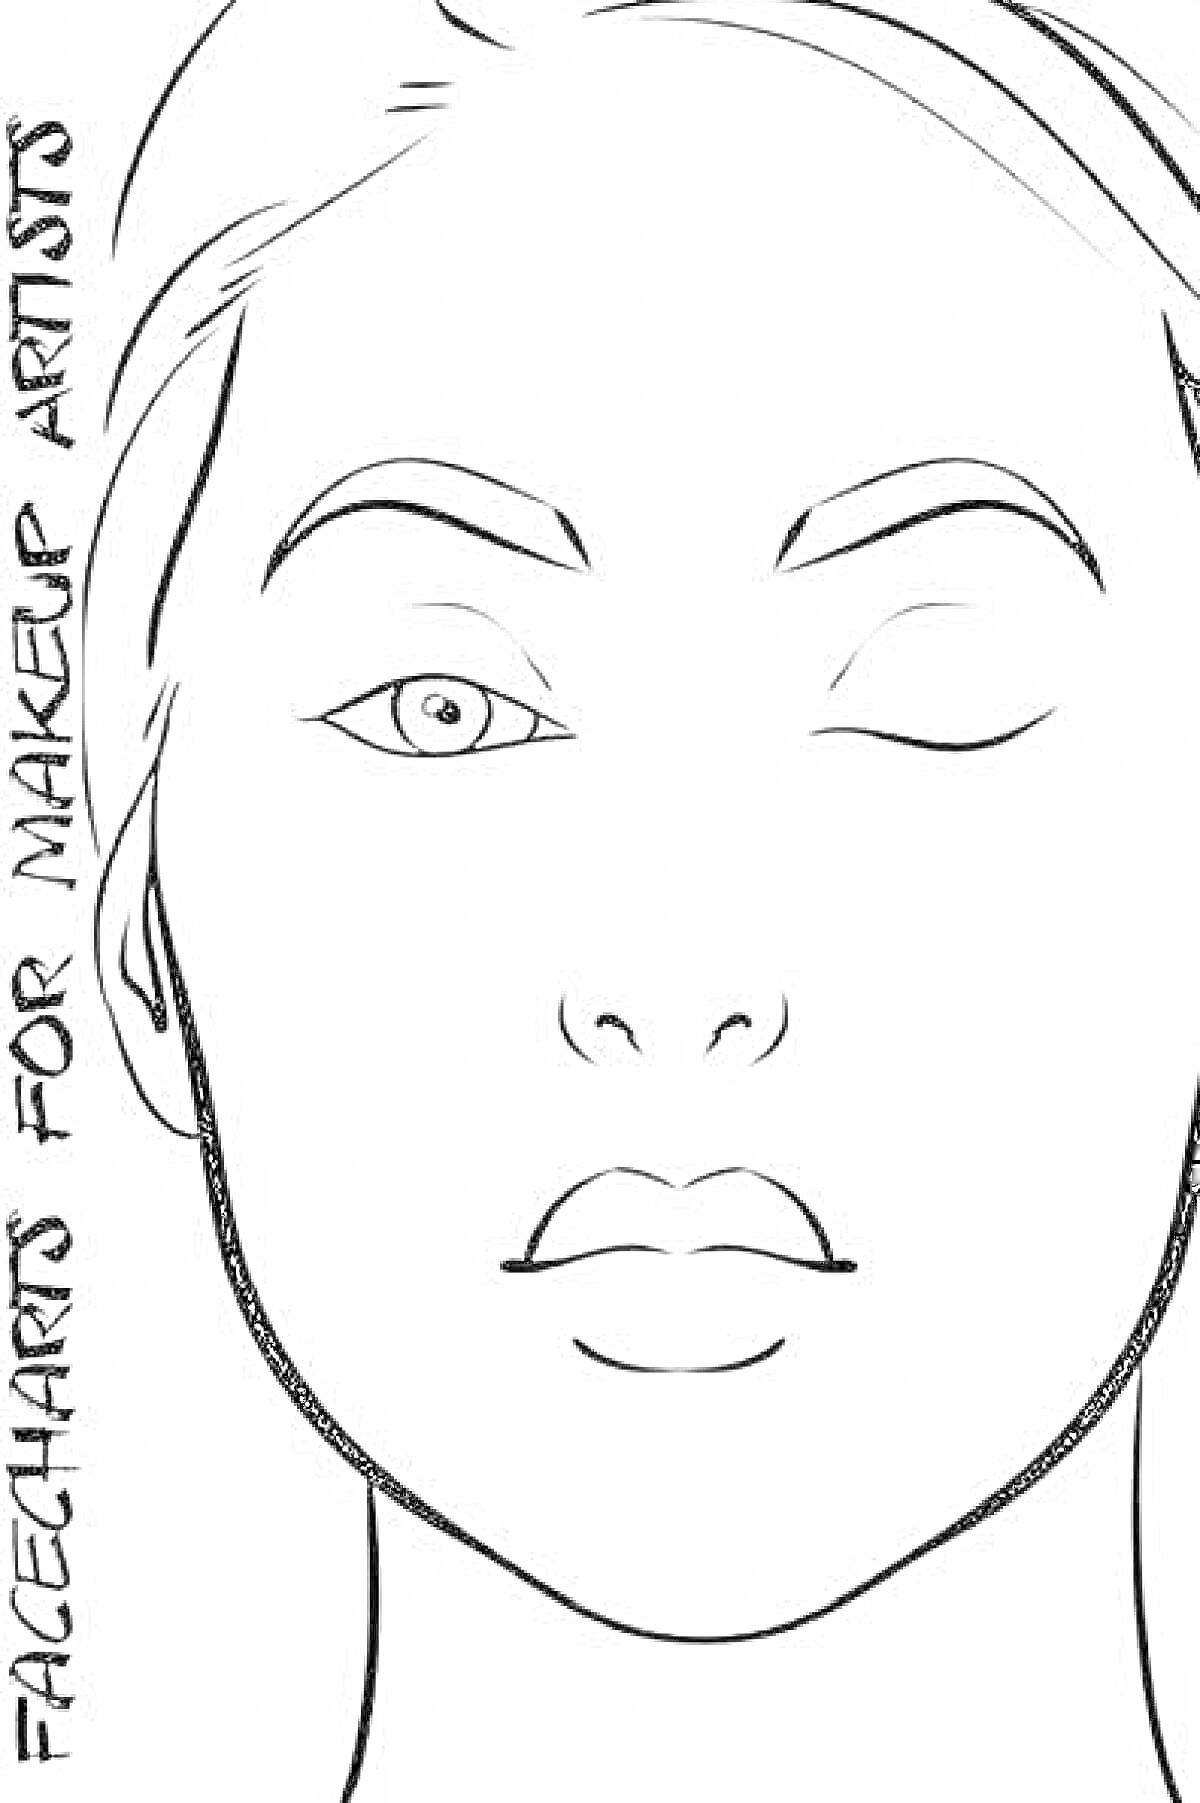 Раскраска Лицо для макияжа с одним открытым и одним закрытым глазом, с надписью 